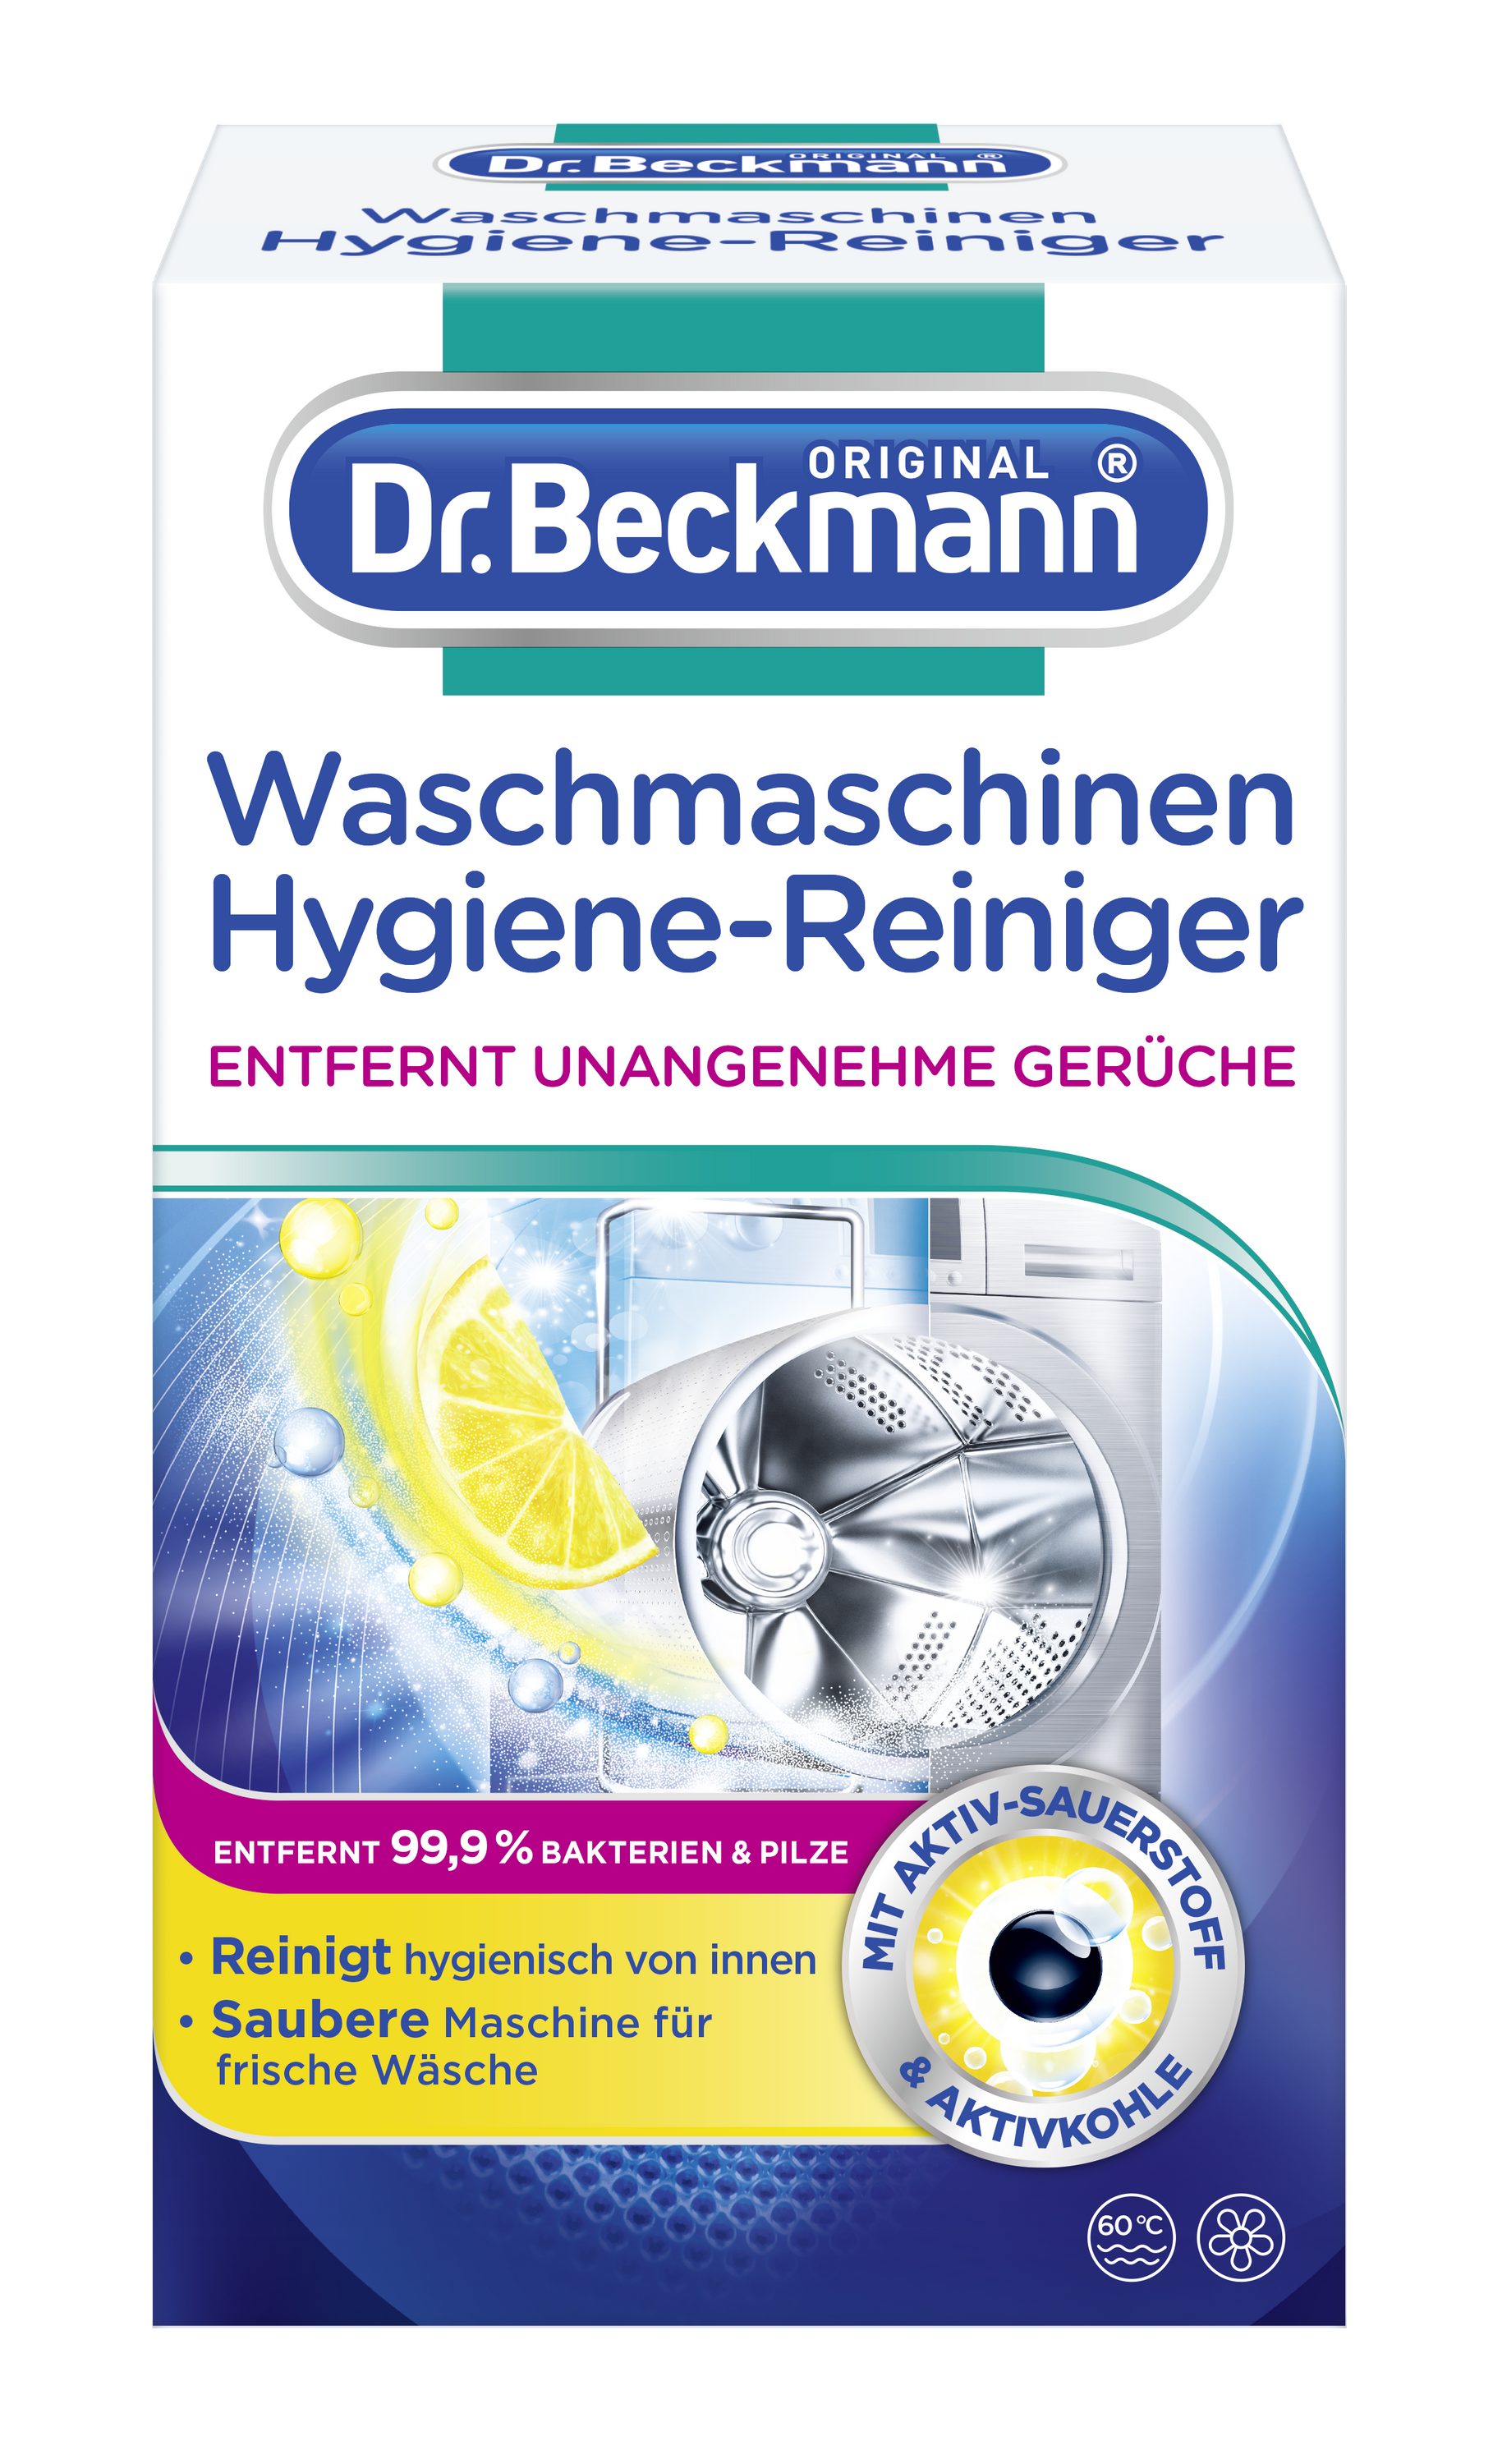 Waschmaschinen 250 Beckmann Maschinenreiniger, Dr. (1-St) g Waschmaschinenpflege Hygiene-Reiniger, 1x